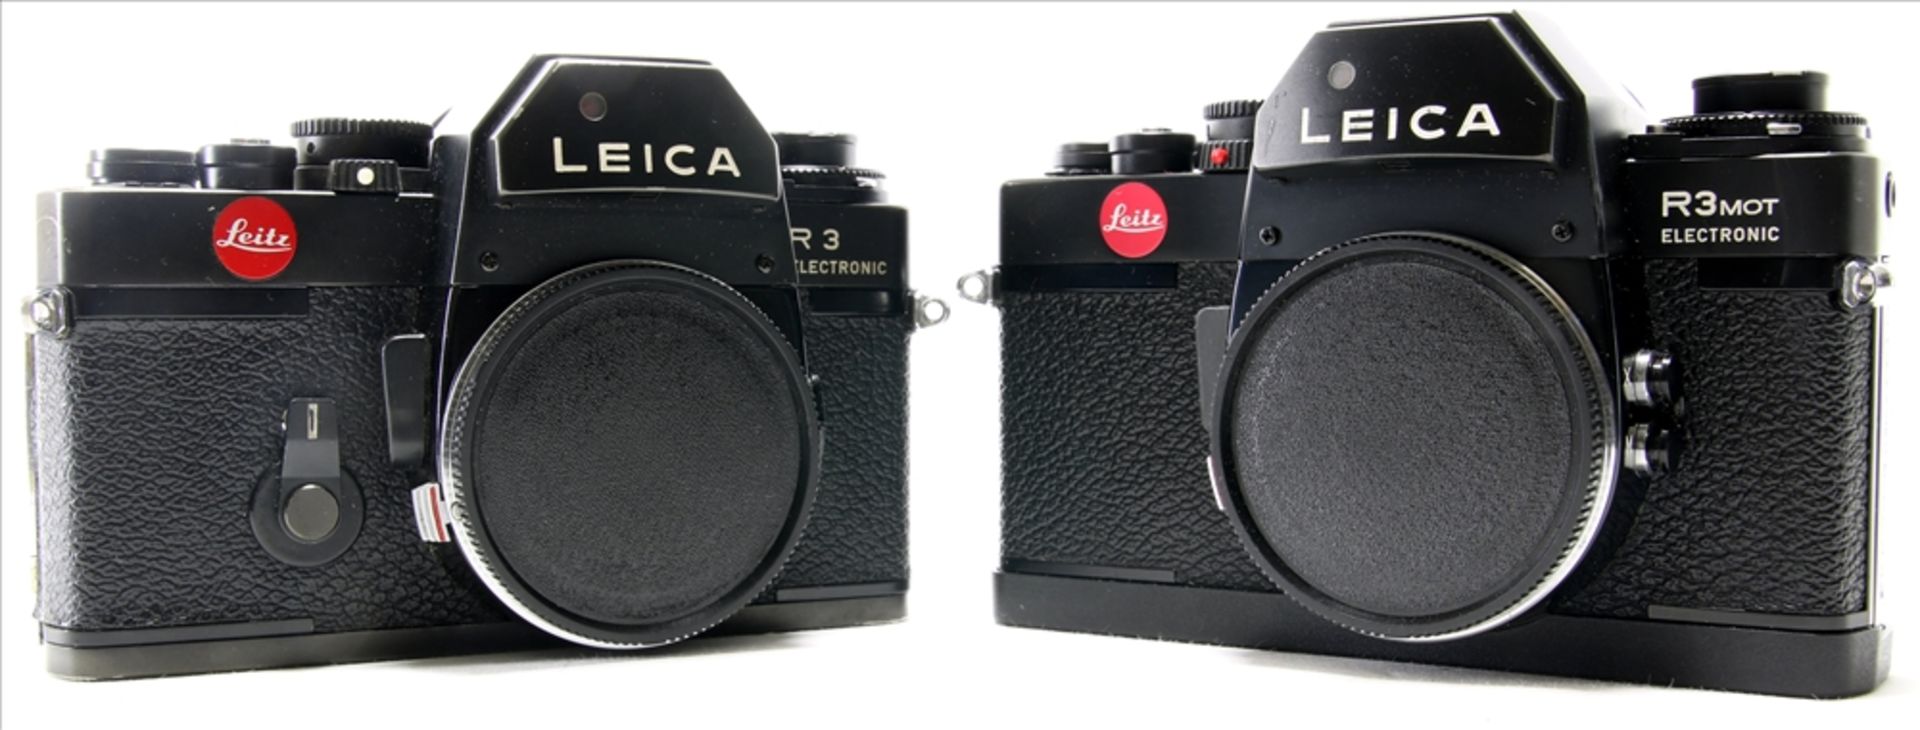 Zwei Leica Kameras R3 und R3 Mot Electronic. Nur Body. Nicht geprüft.